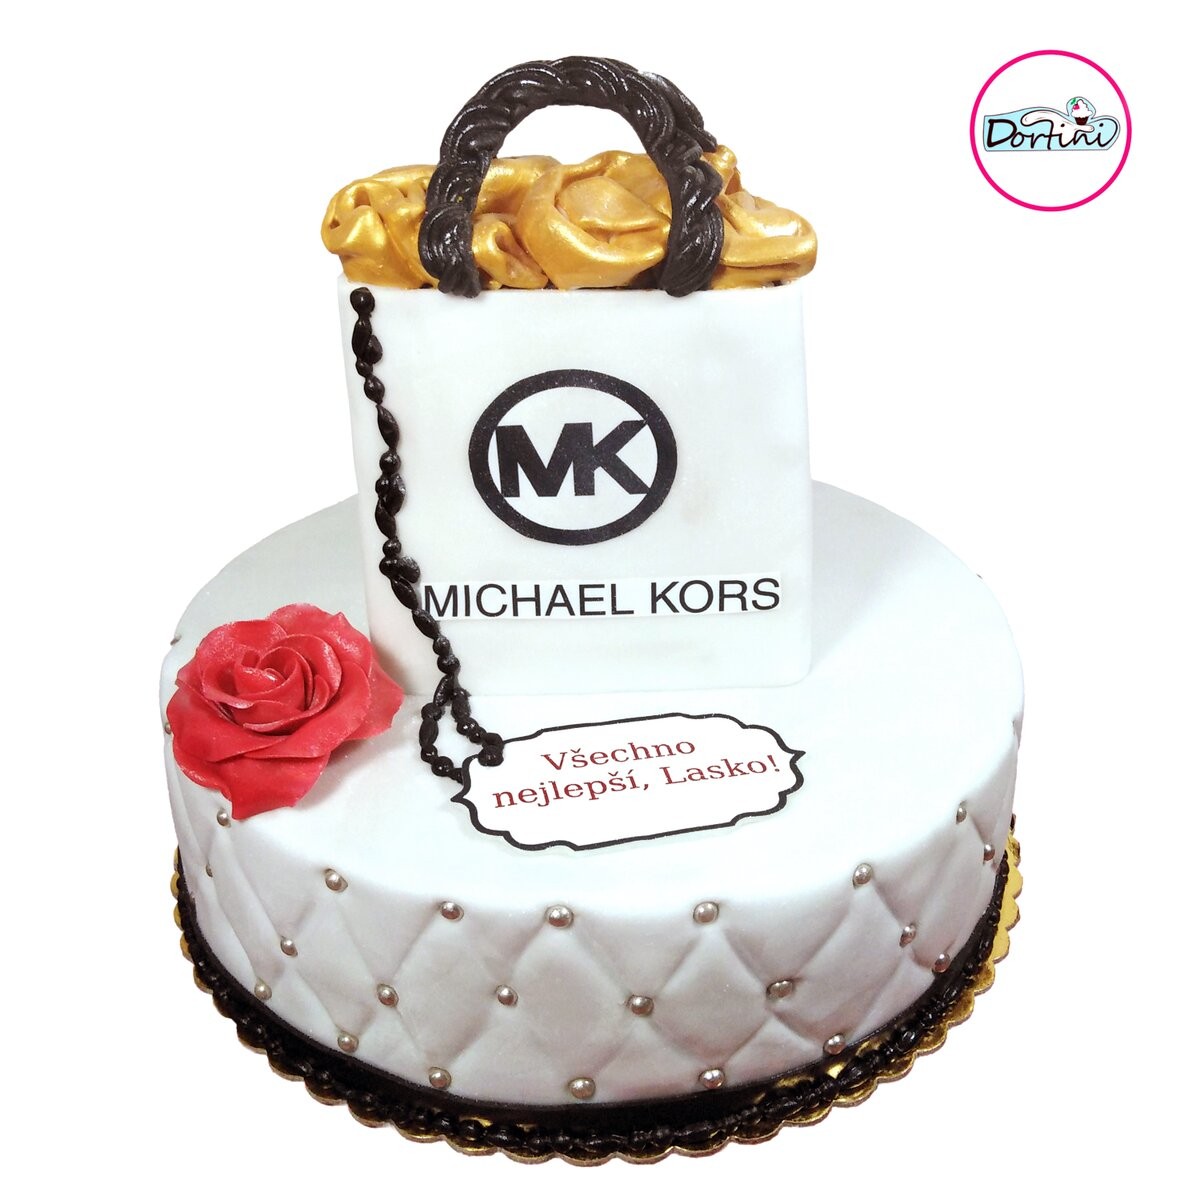 Michael Kors cake v Praze ✓ .